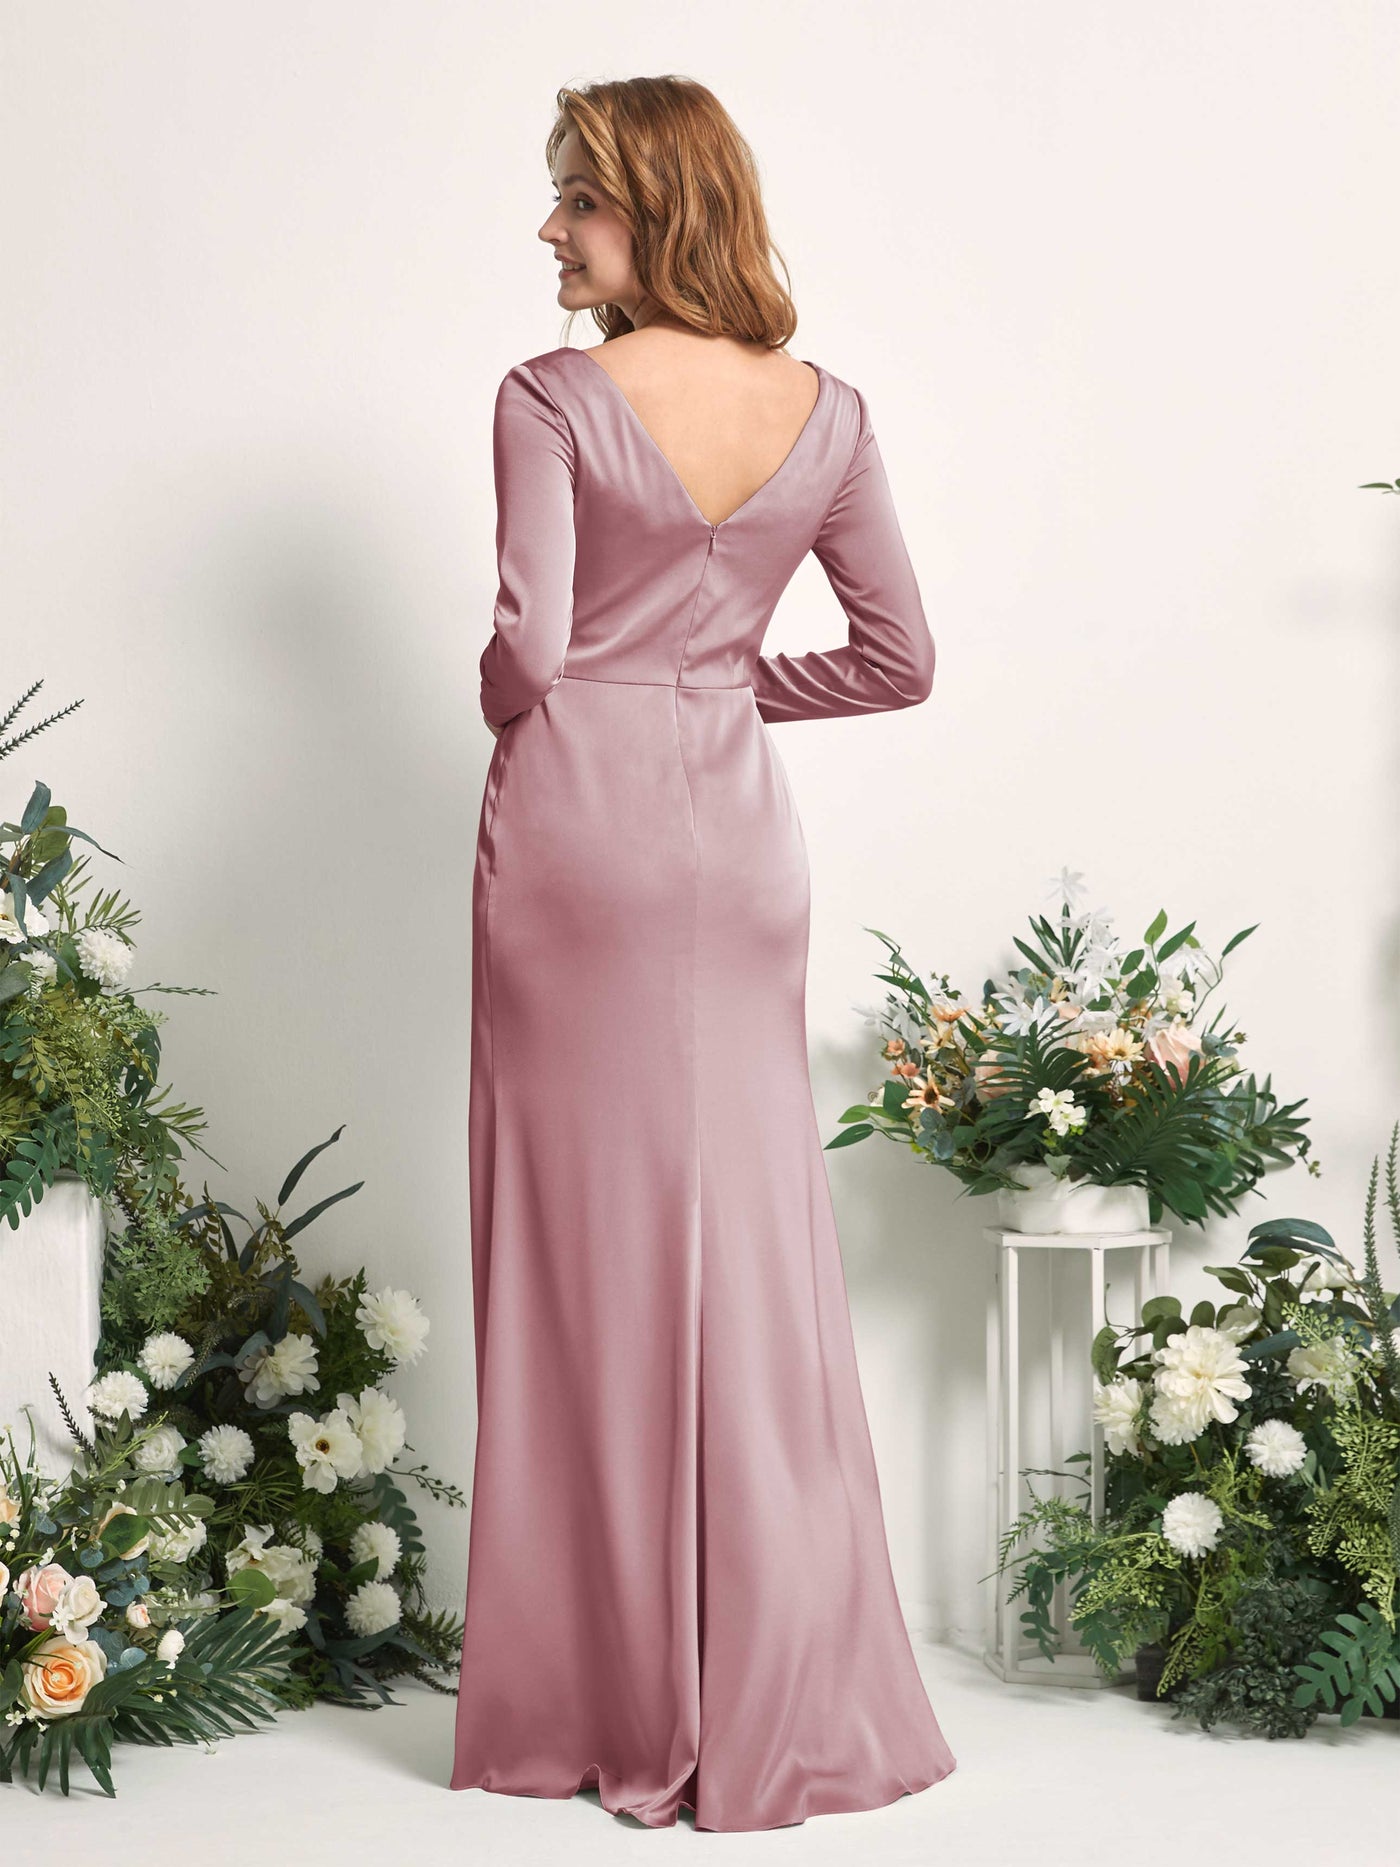 Rose Quartz Bridesmaid Dresses Bridesmaid Dress A-line Satin V-neck Full Length Long Sleeves Wedding Party Dress (80225866)#color_rose-quartz